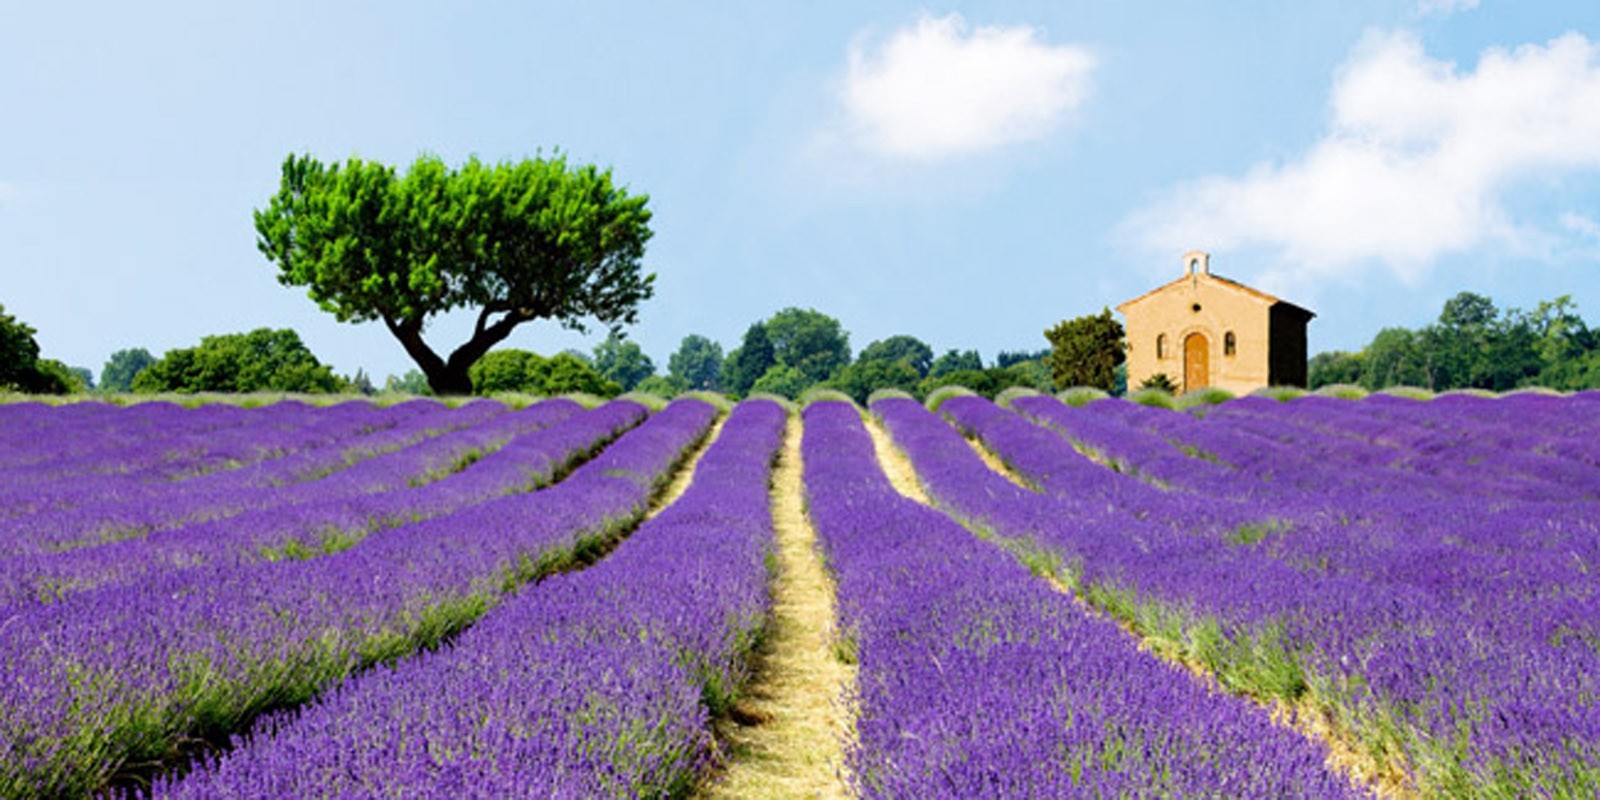 Pangea Images - Lavender Fields, France